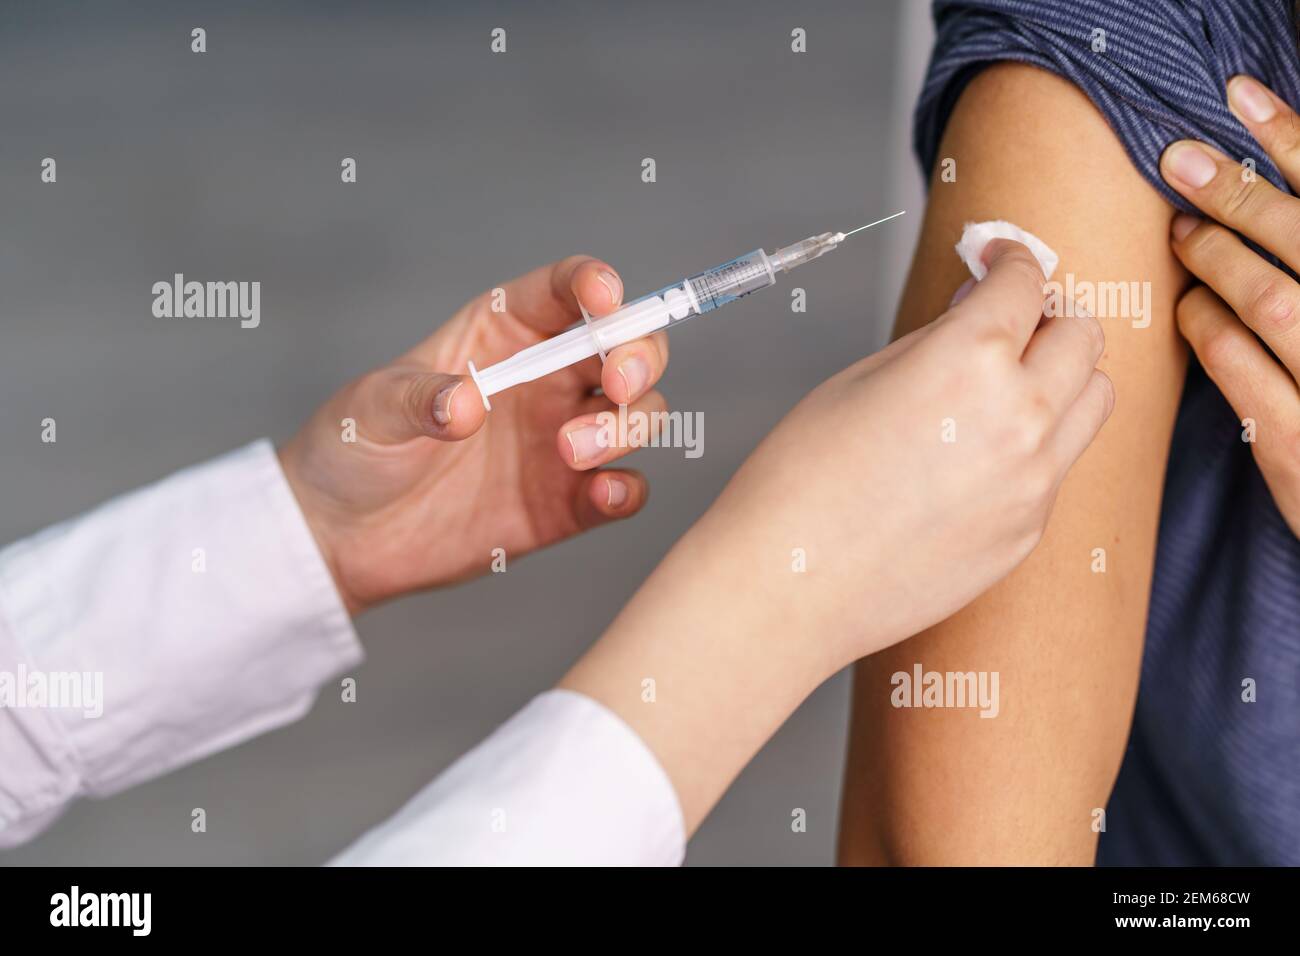 Vaccination concept de santé - mains du médecin ou de l'infirmière une seringue et une ampoule préparant un cliché de virus corona vaccin contre le vph covid-19 ou le vaccin contre la grippe pour u Banque D'Images